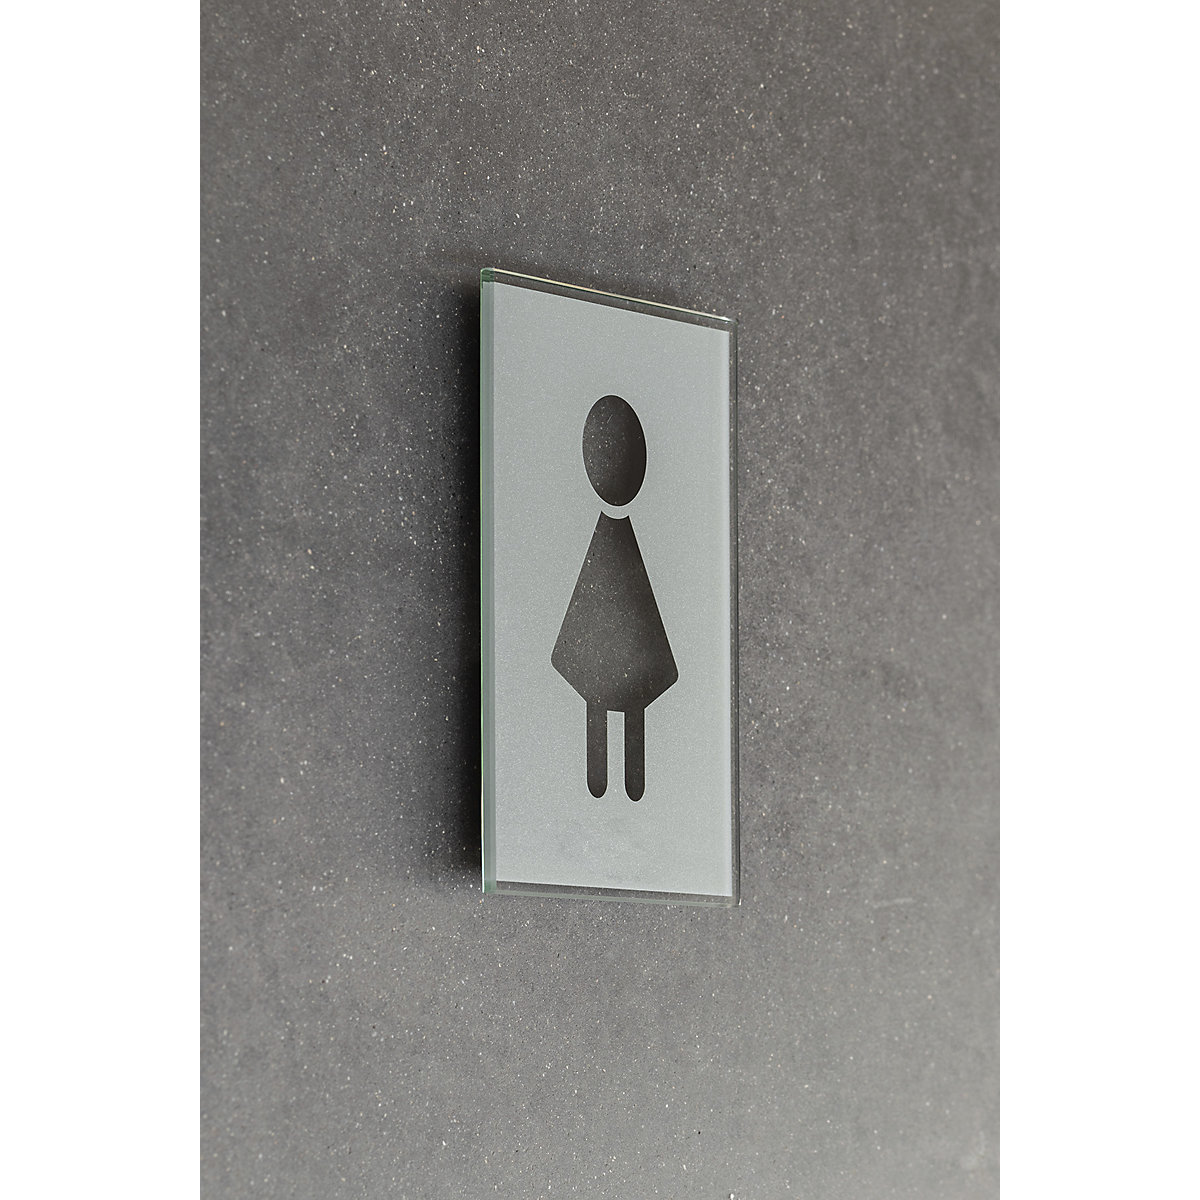 Türschild Piktogramm WC, HxB 148 x 105 mm, selbstklebend, Damen